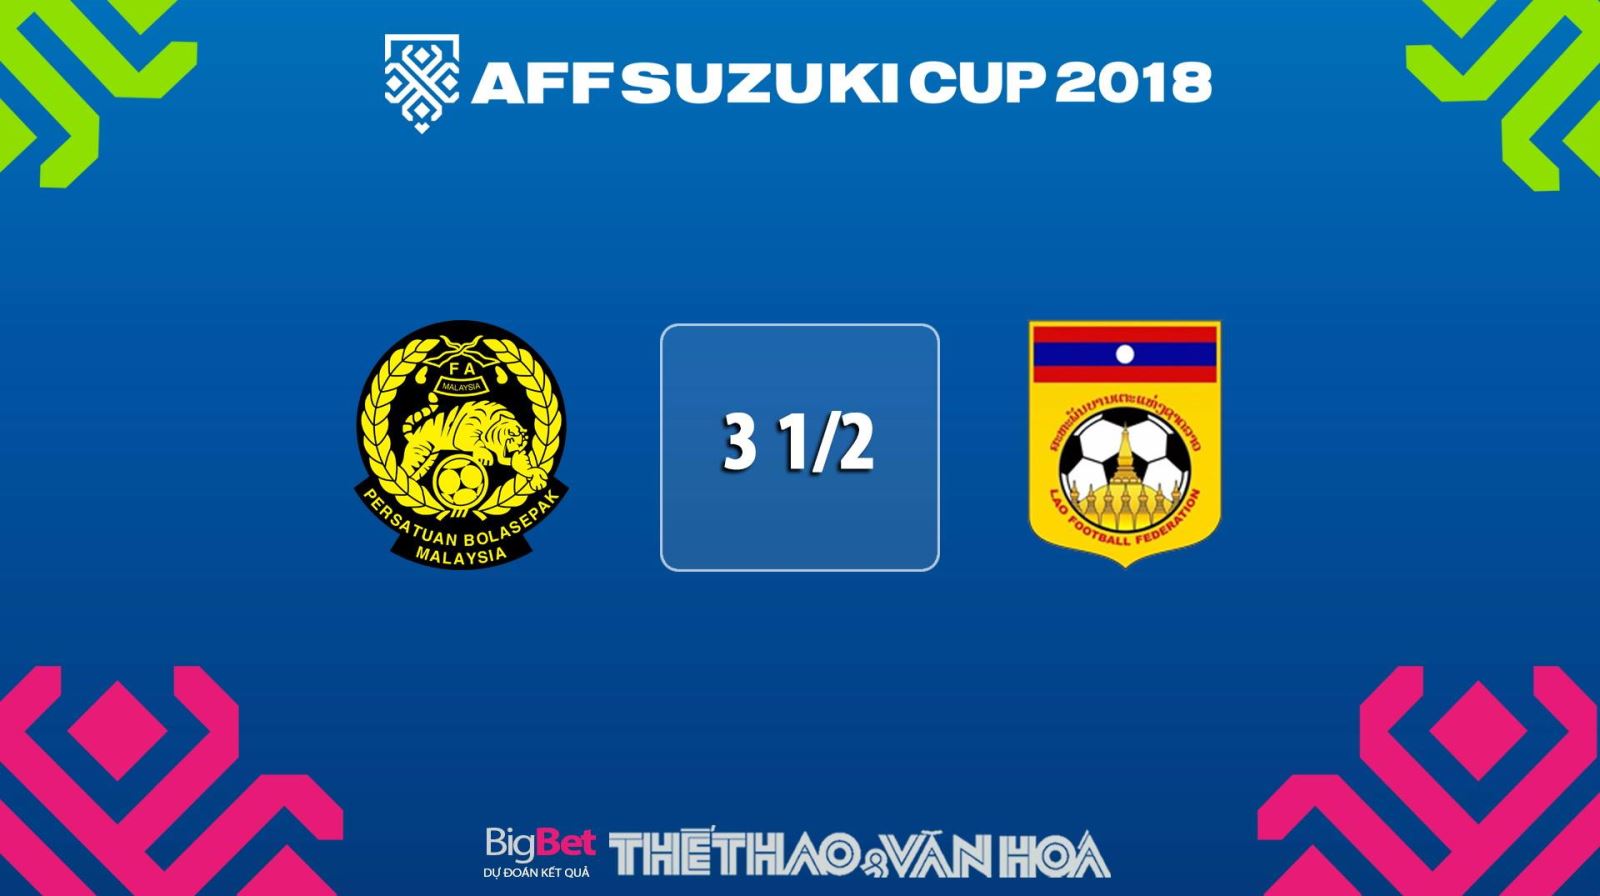 AFF Cup, lịch thi đấu AFF Cup, lịch thi đấu AFF Cup 2018, trực tiếp AFF Cup, trực tiếp AFF Cup 2018, bảng xếp hạng AFF Cup, BXH AFF Cup 2018